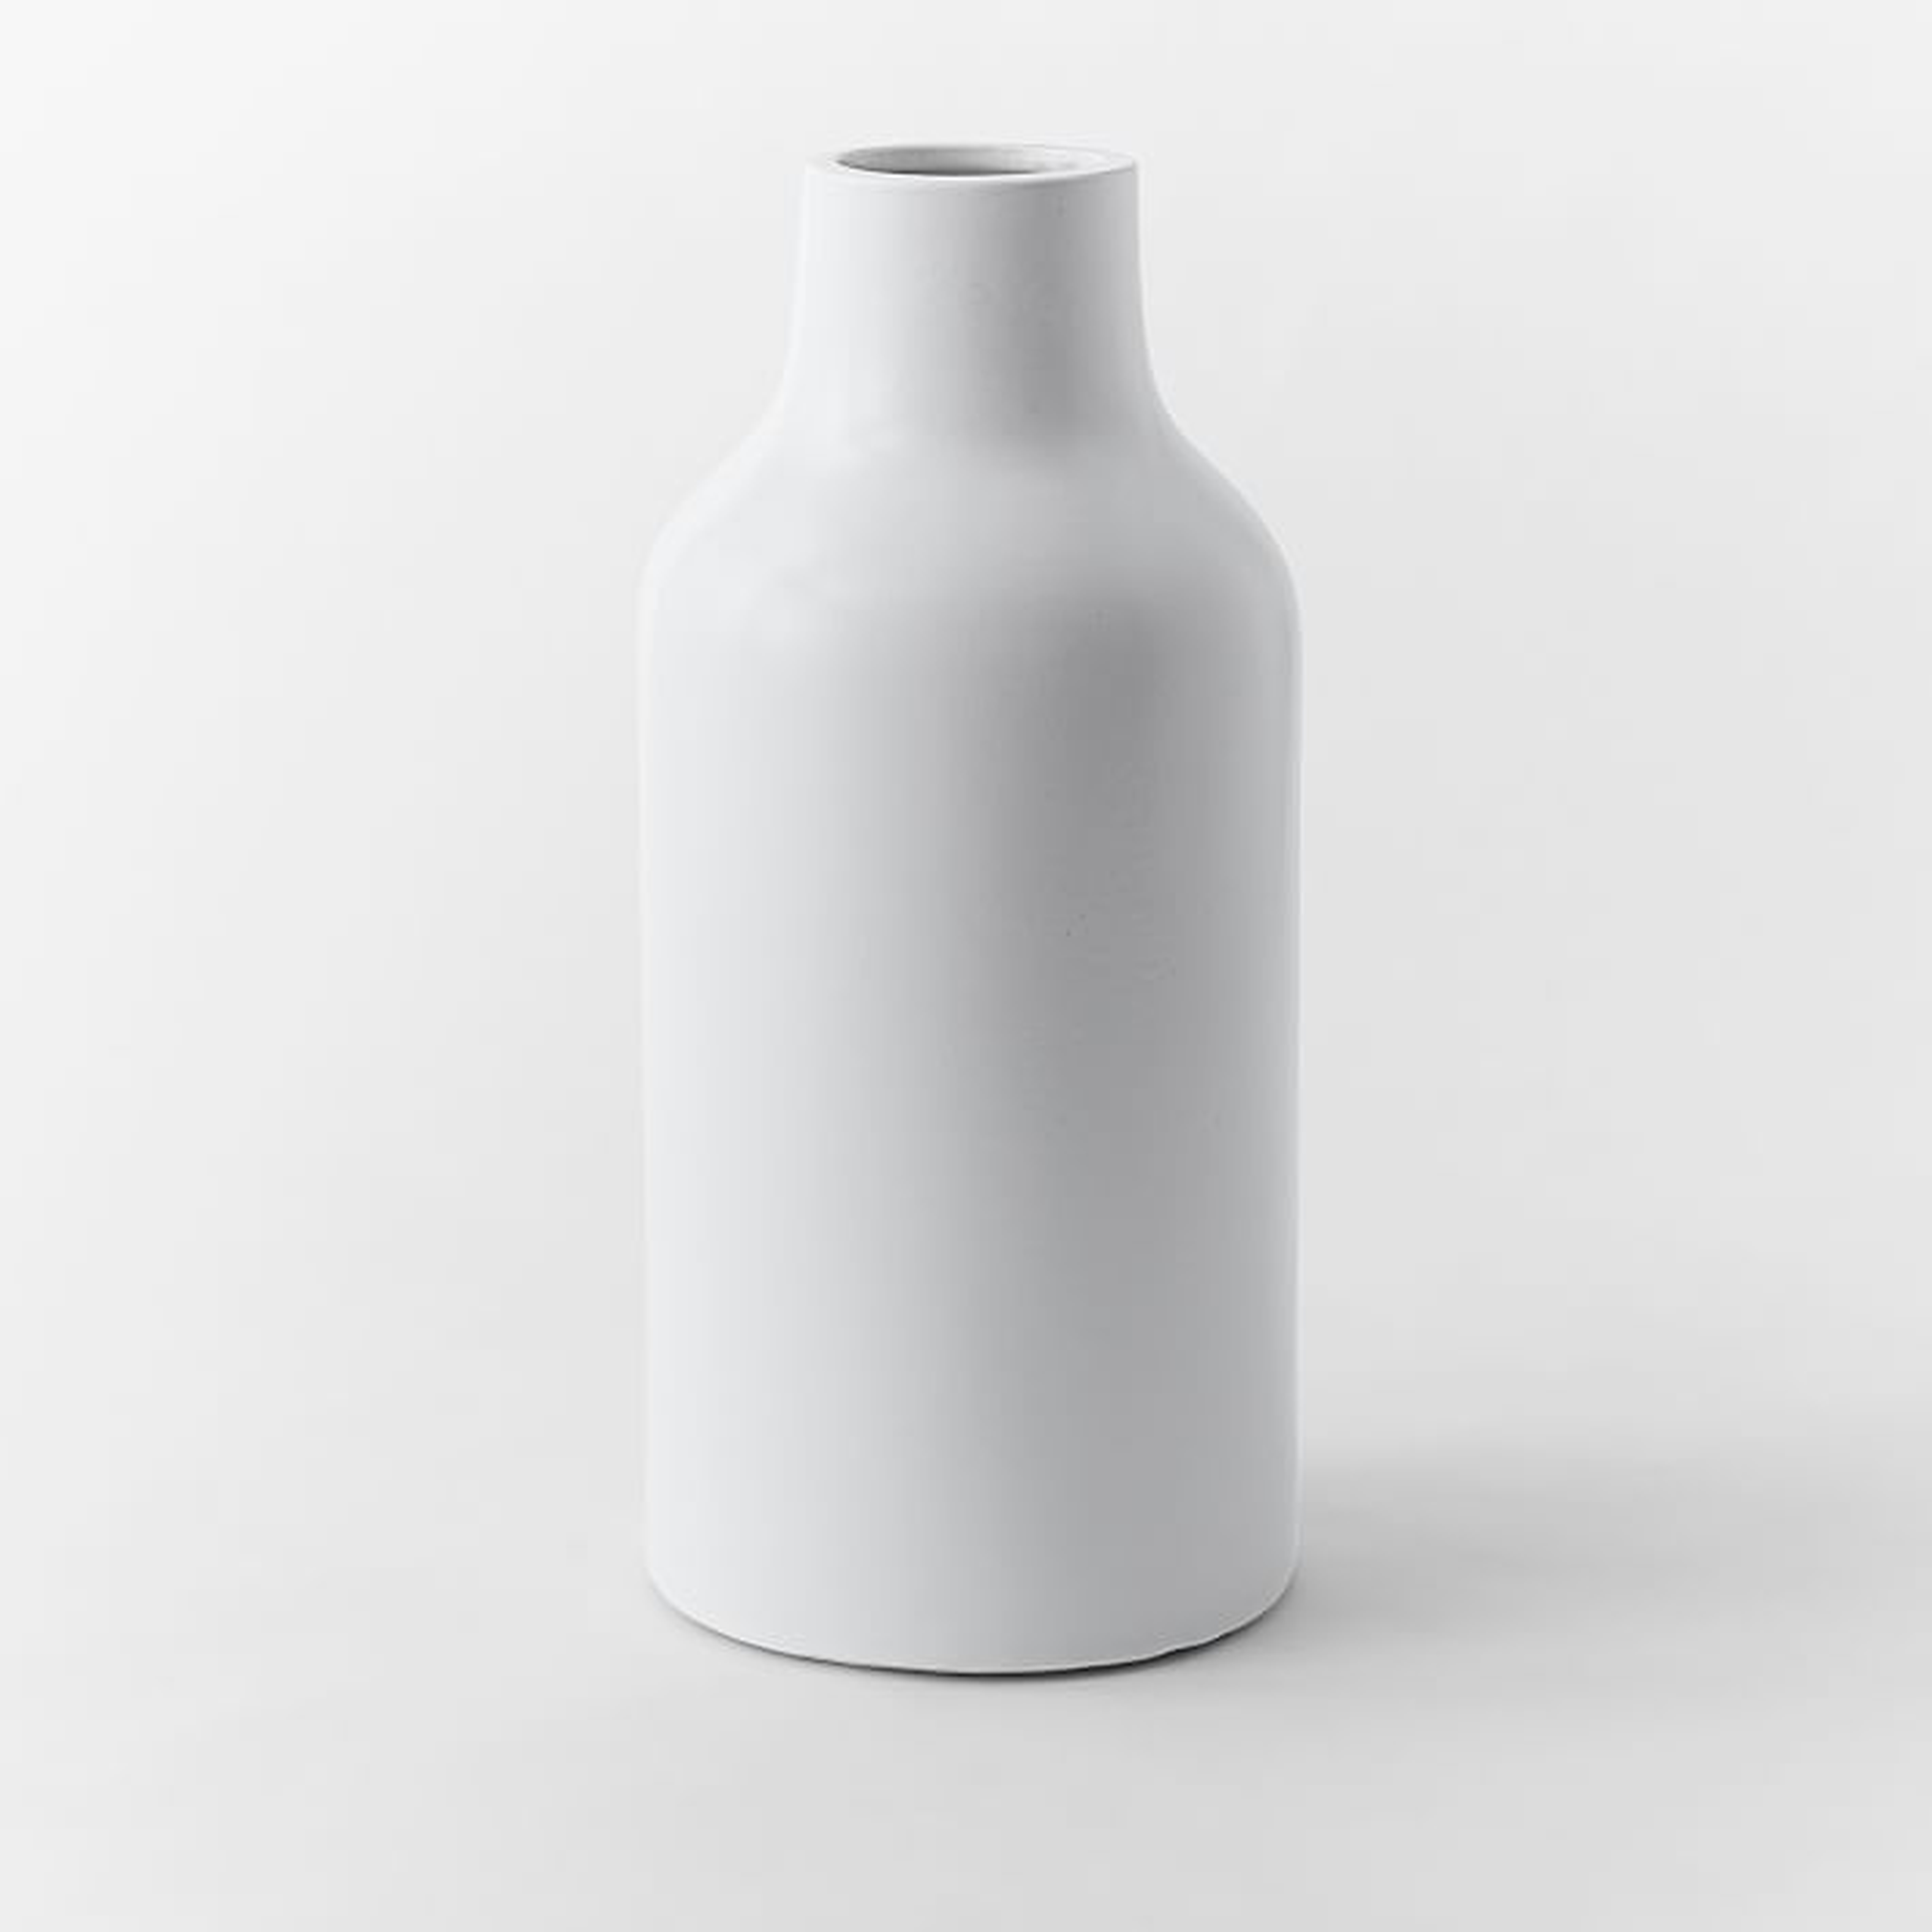 Pure White Ceramic Vase - Jug - West Elm